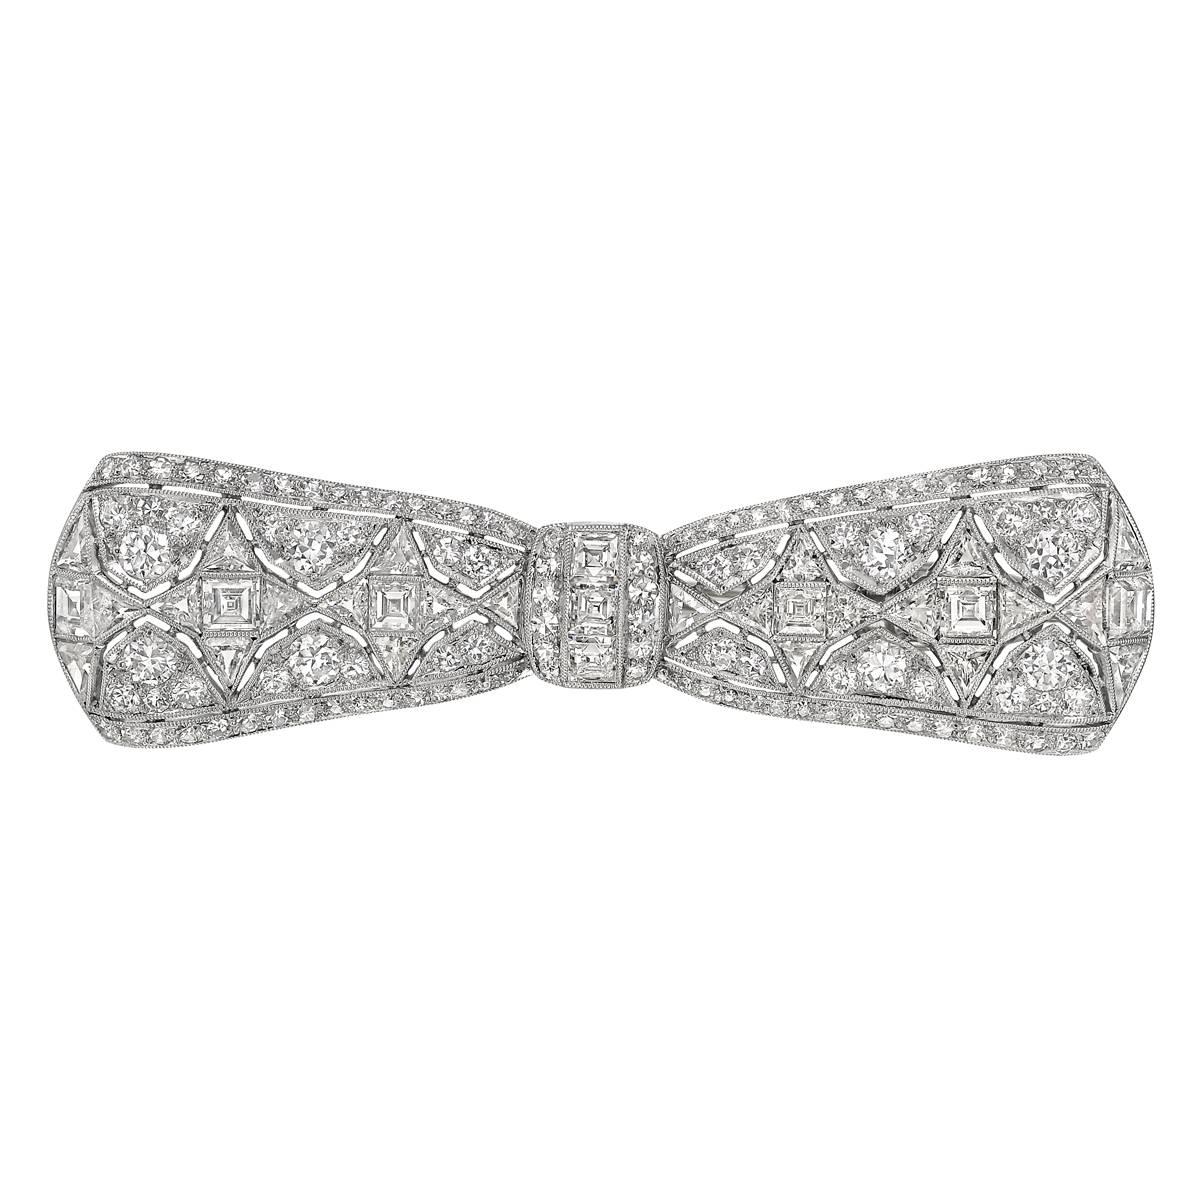 Tiffany & Co. Art Deco Diamond Bow Pin